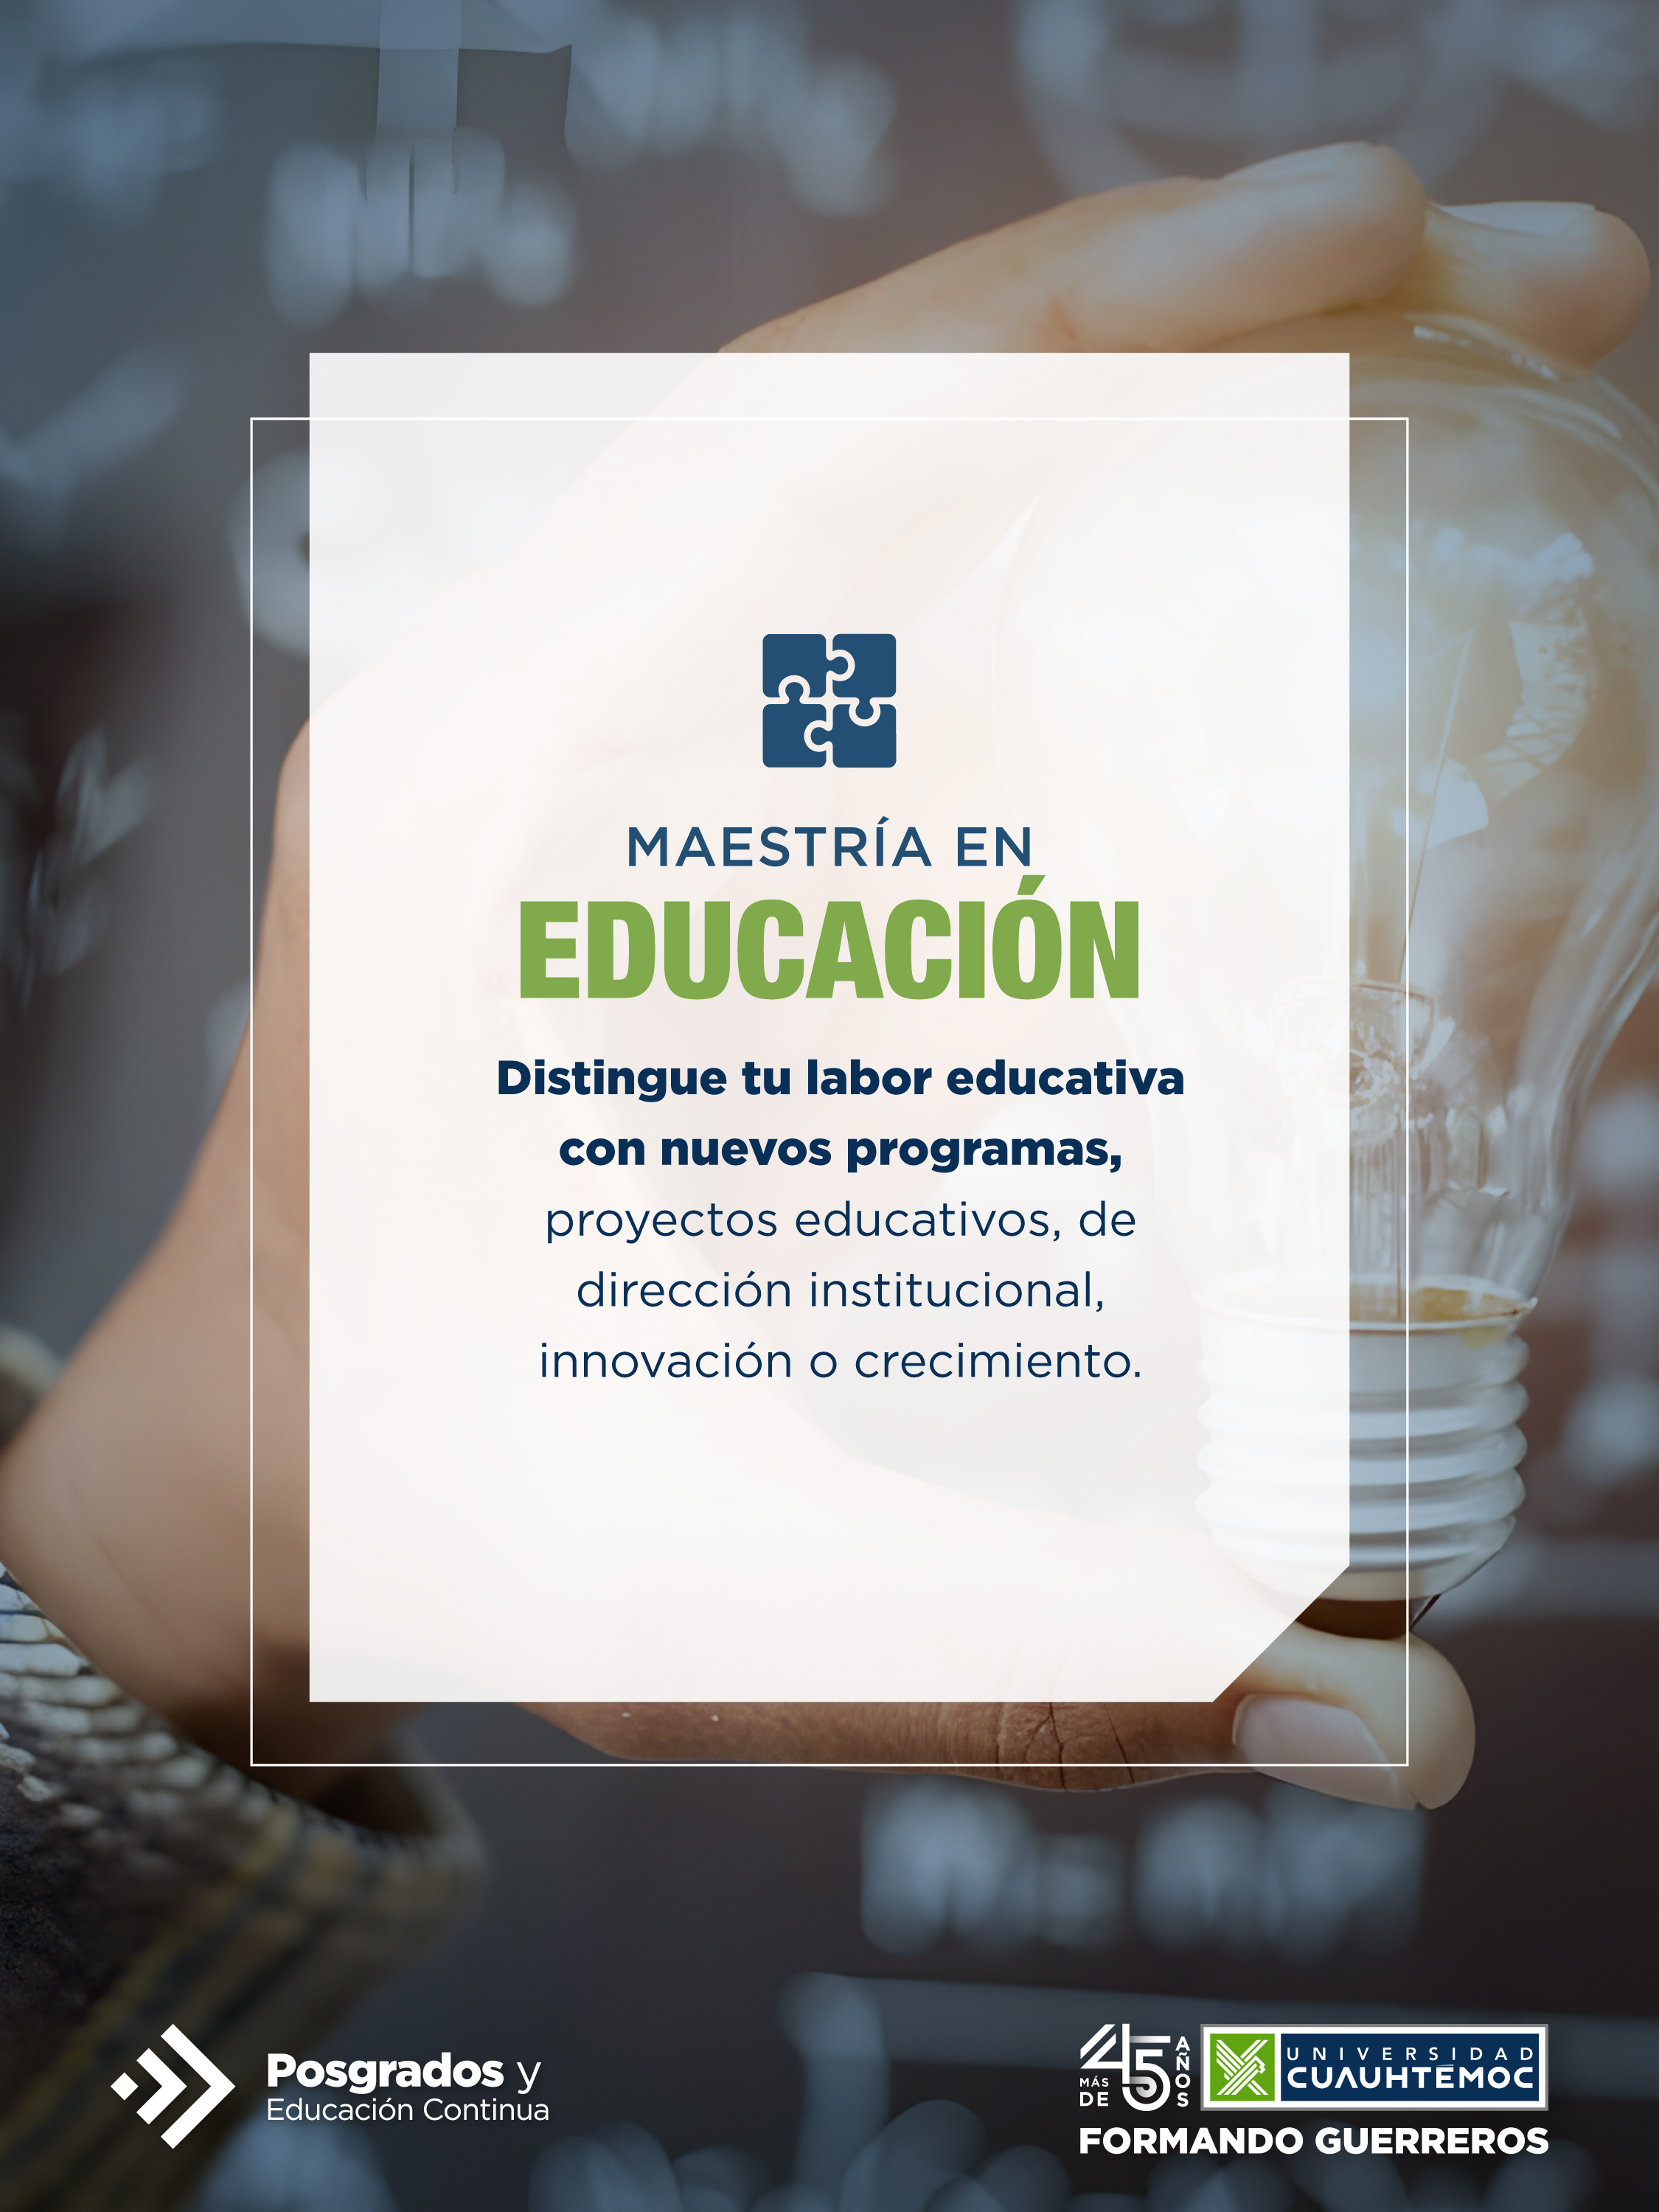 El objetivo de la Maestria en Educación de la Universidad Cuauhtémoc te animará a querer ser parte de este programa.